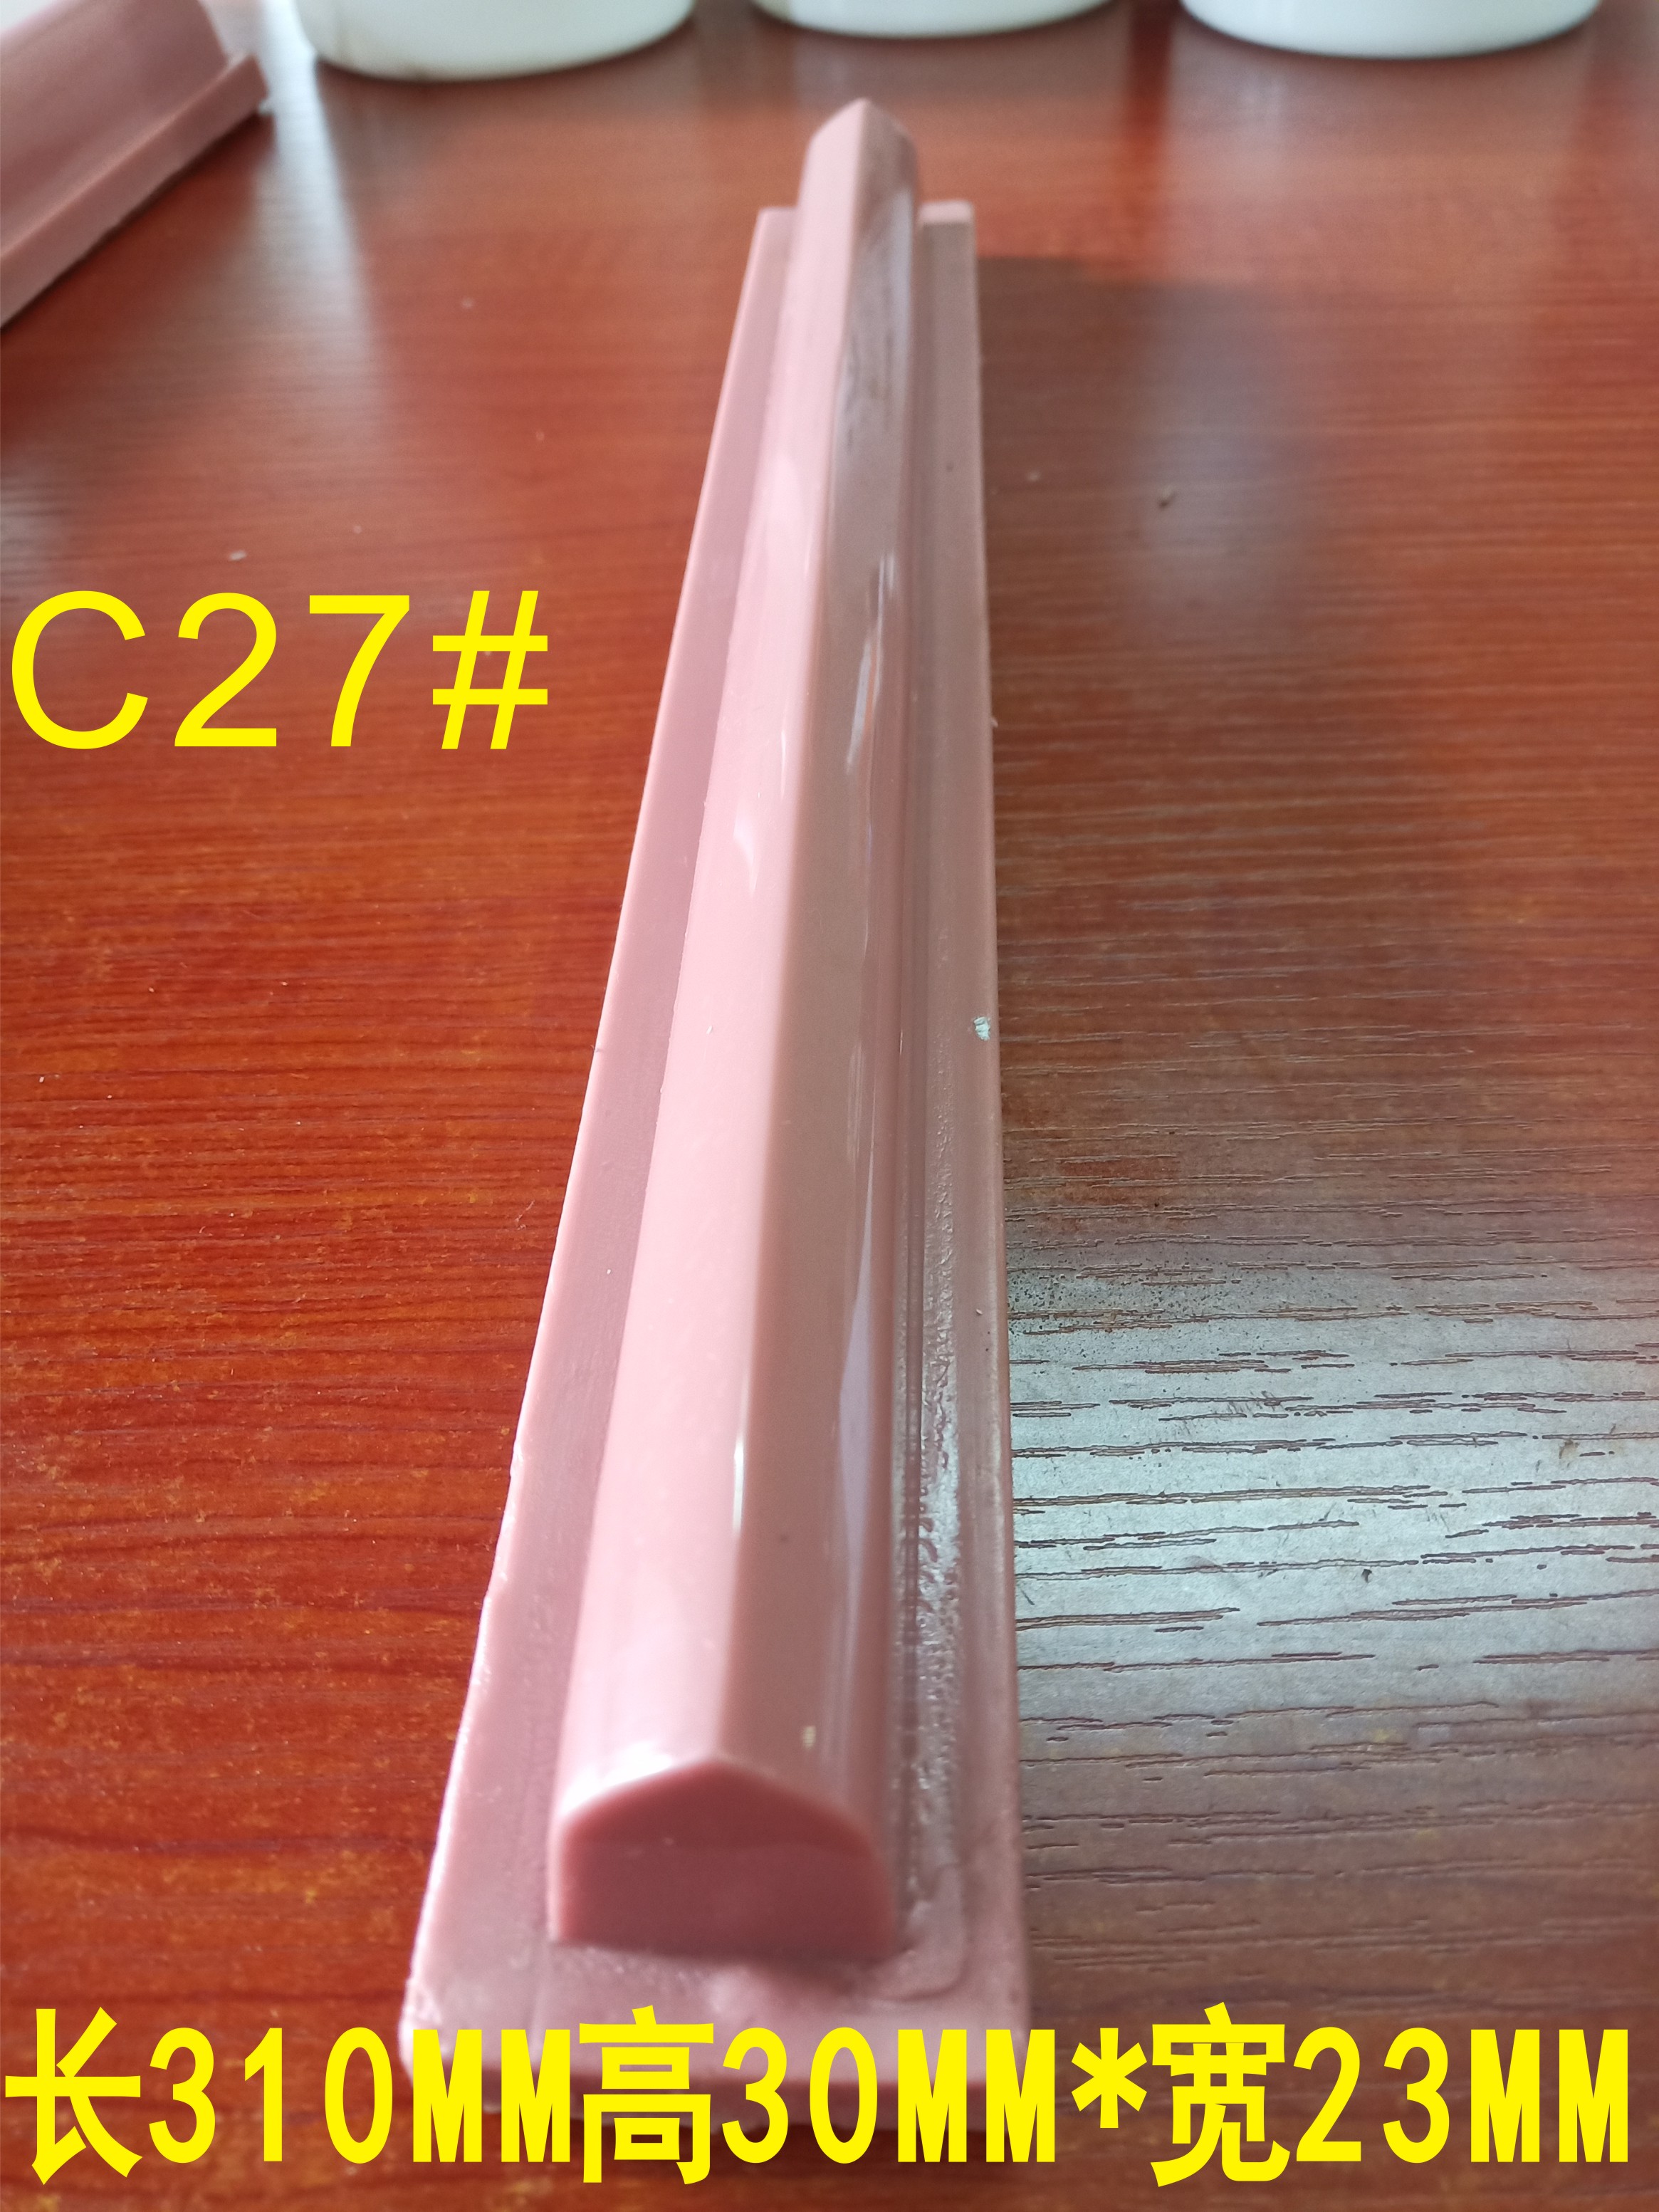 移印胶头、C27#气动移印机胶头、硅胶胶头、长形、圆形、方形、好用耐用可订做